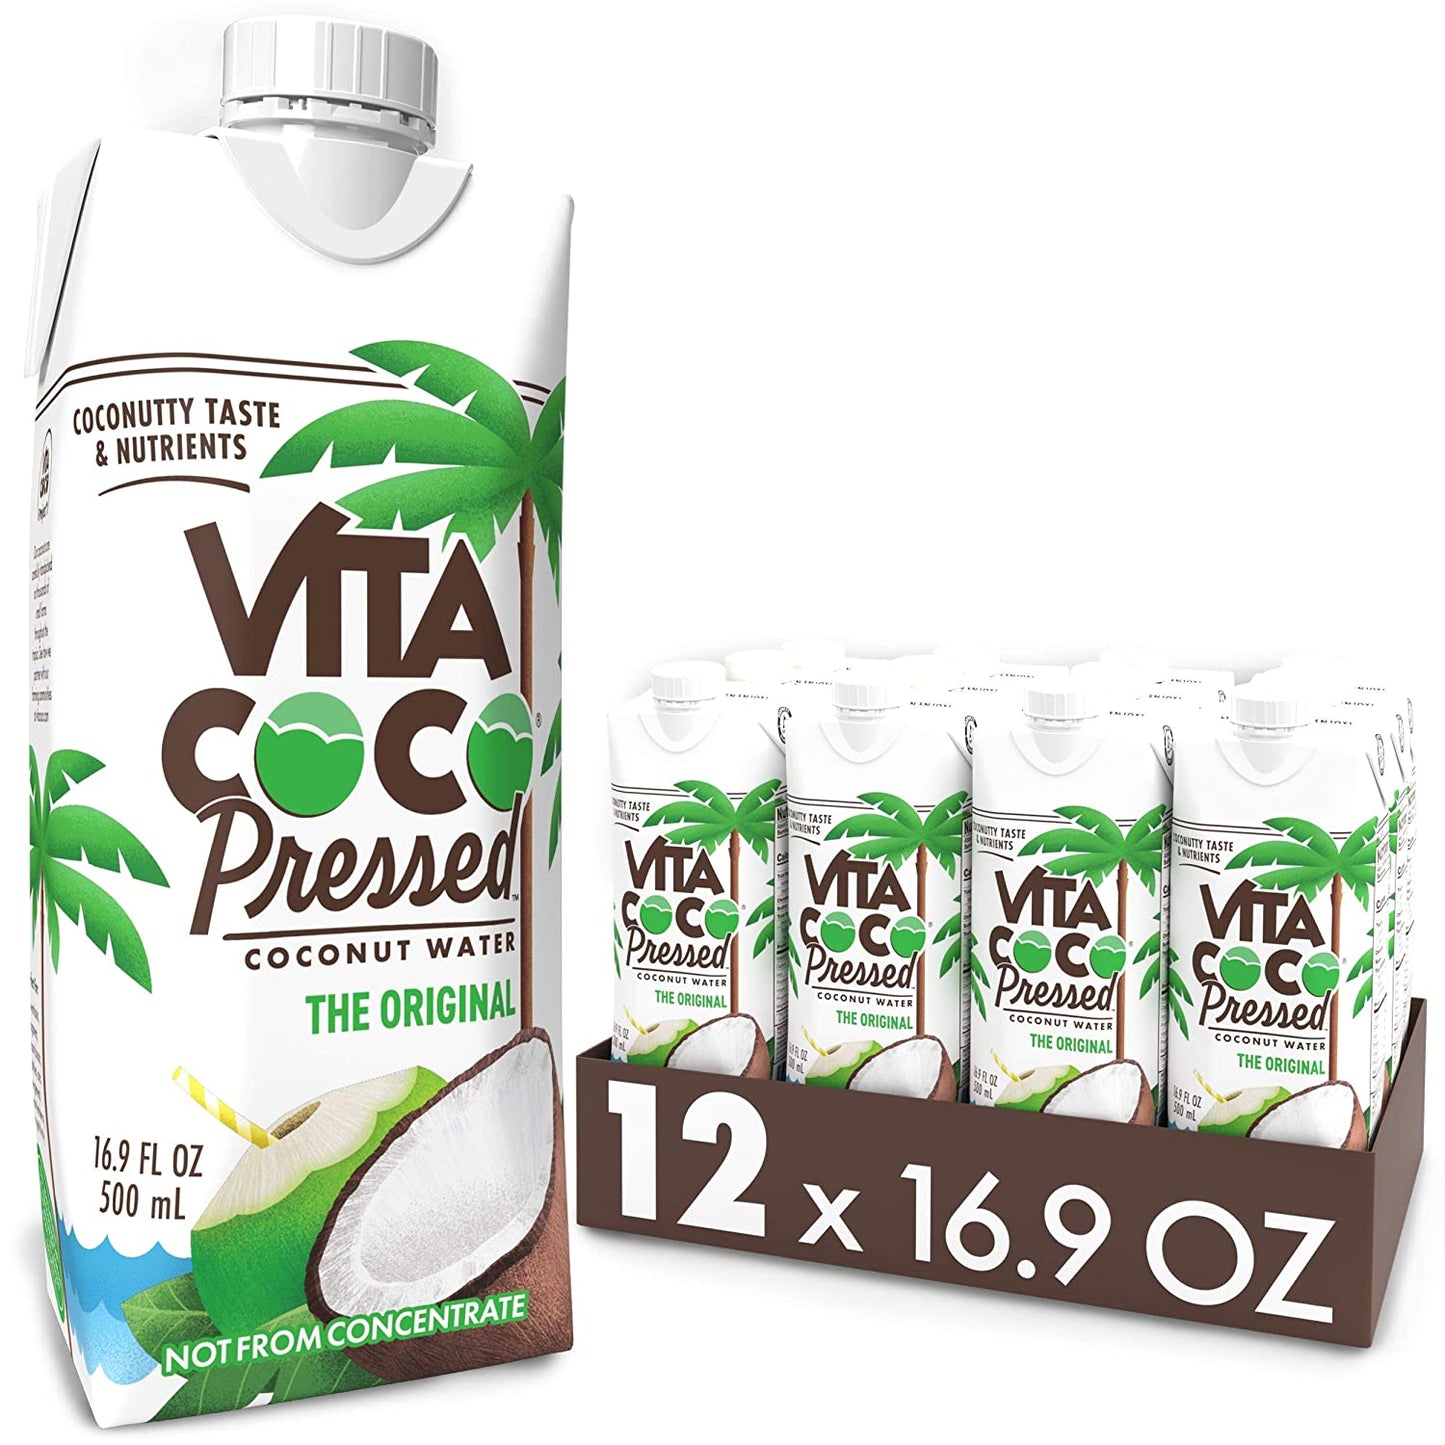 Vita Coco Coconut Water, Pressed Coconut